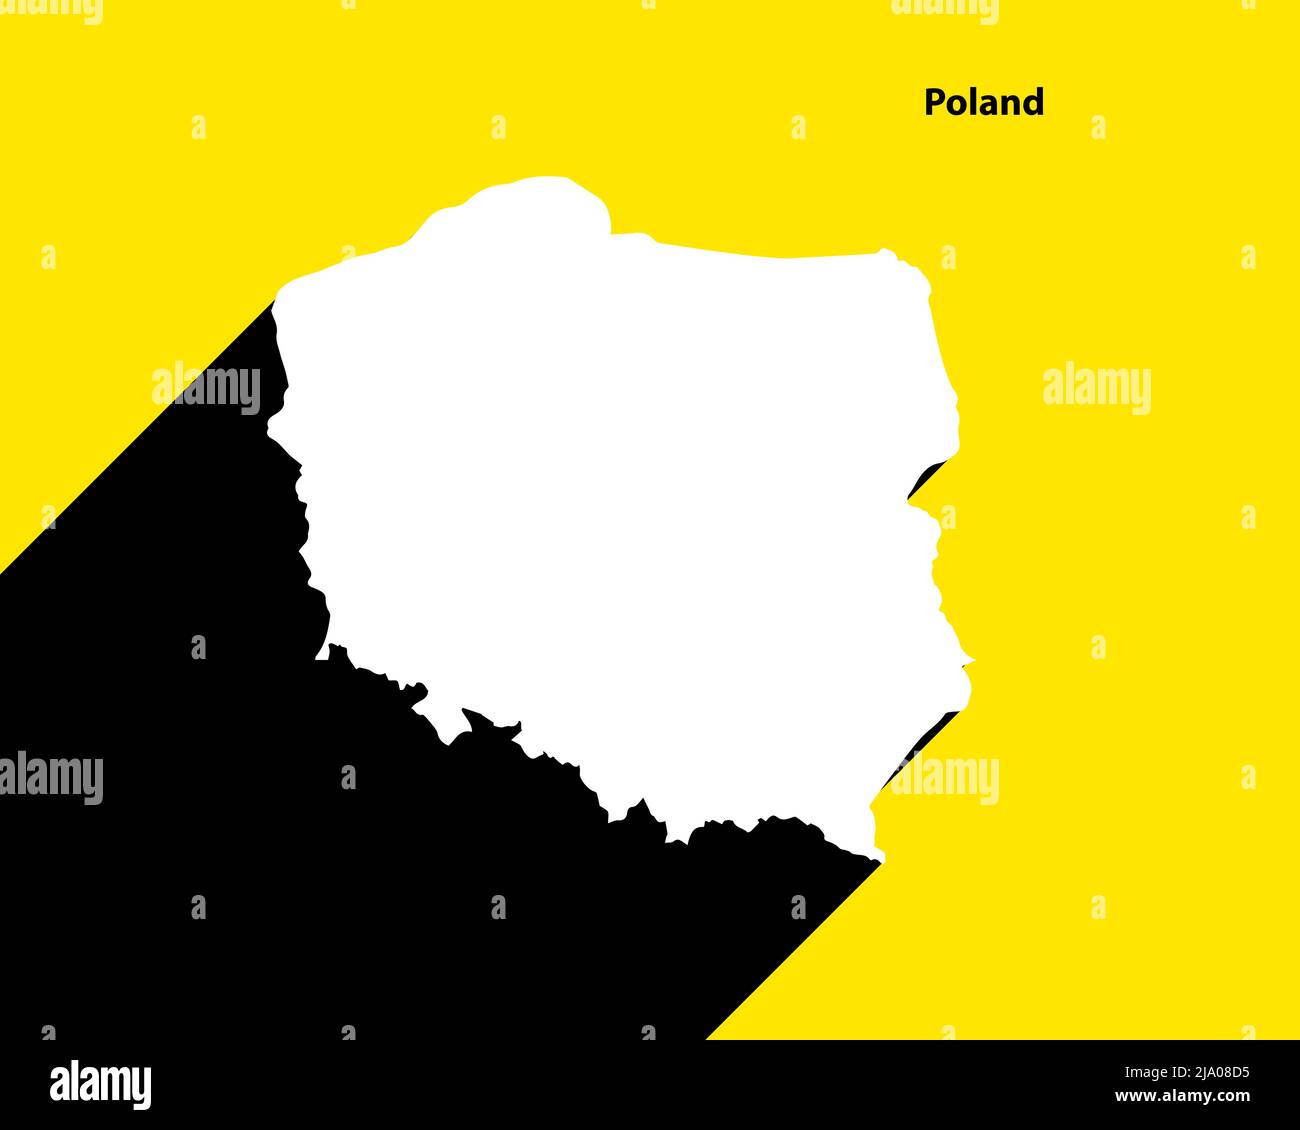 Polen Karte auf Retro-Poster mit langem Schatten. Vintage-Zeichen einfach zu bearbeiten, zu bearbeiten, zu ändern oder zu färben. Stock Vektor